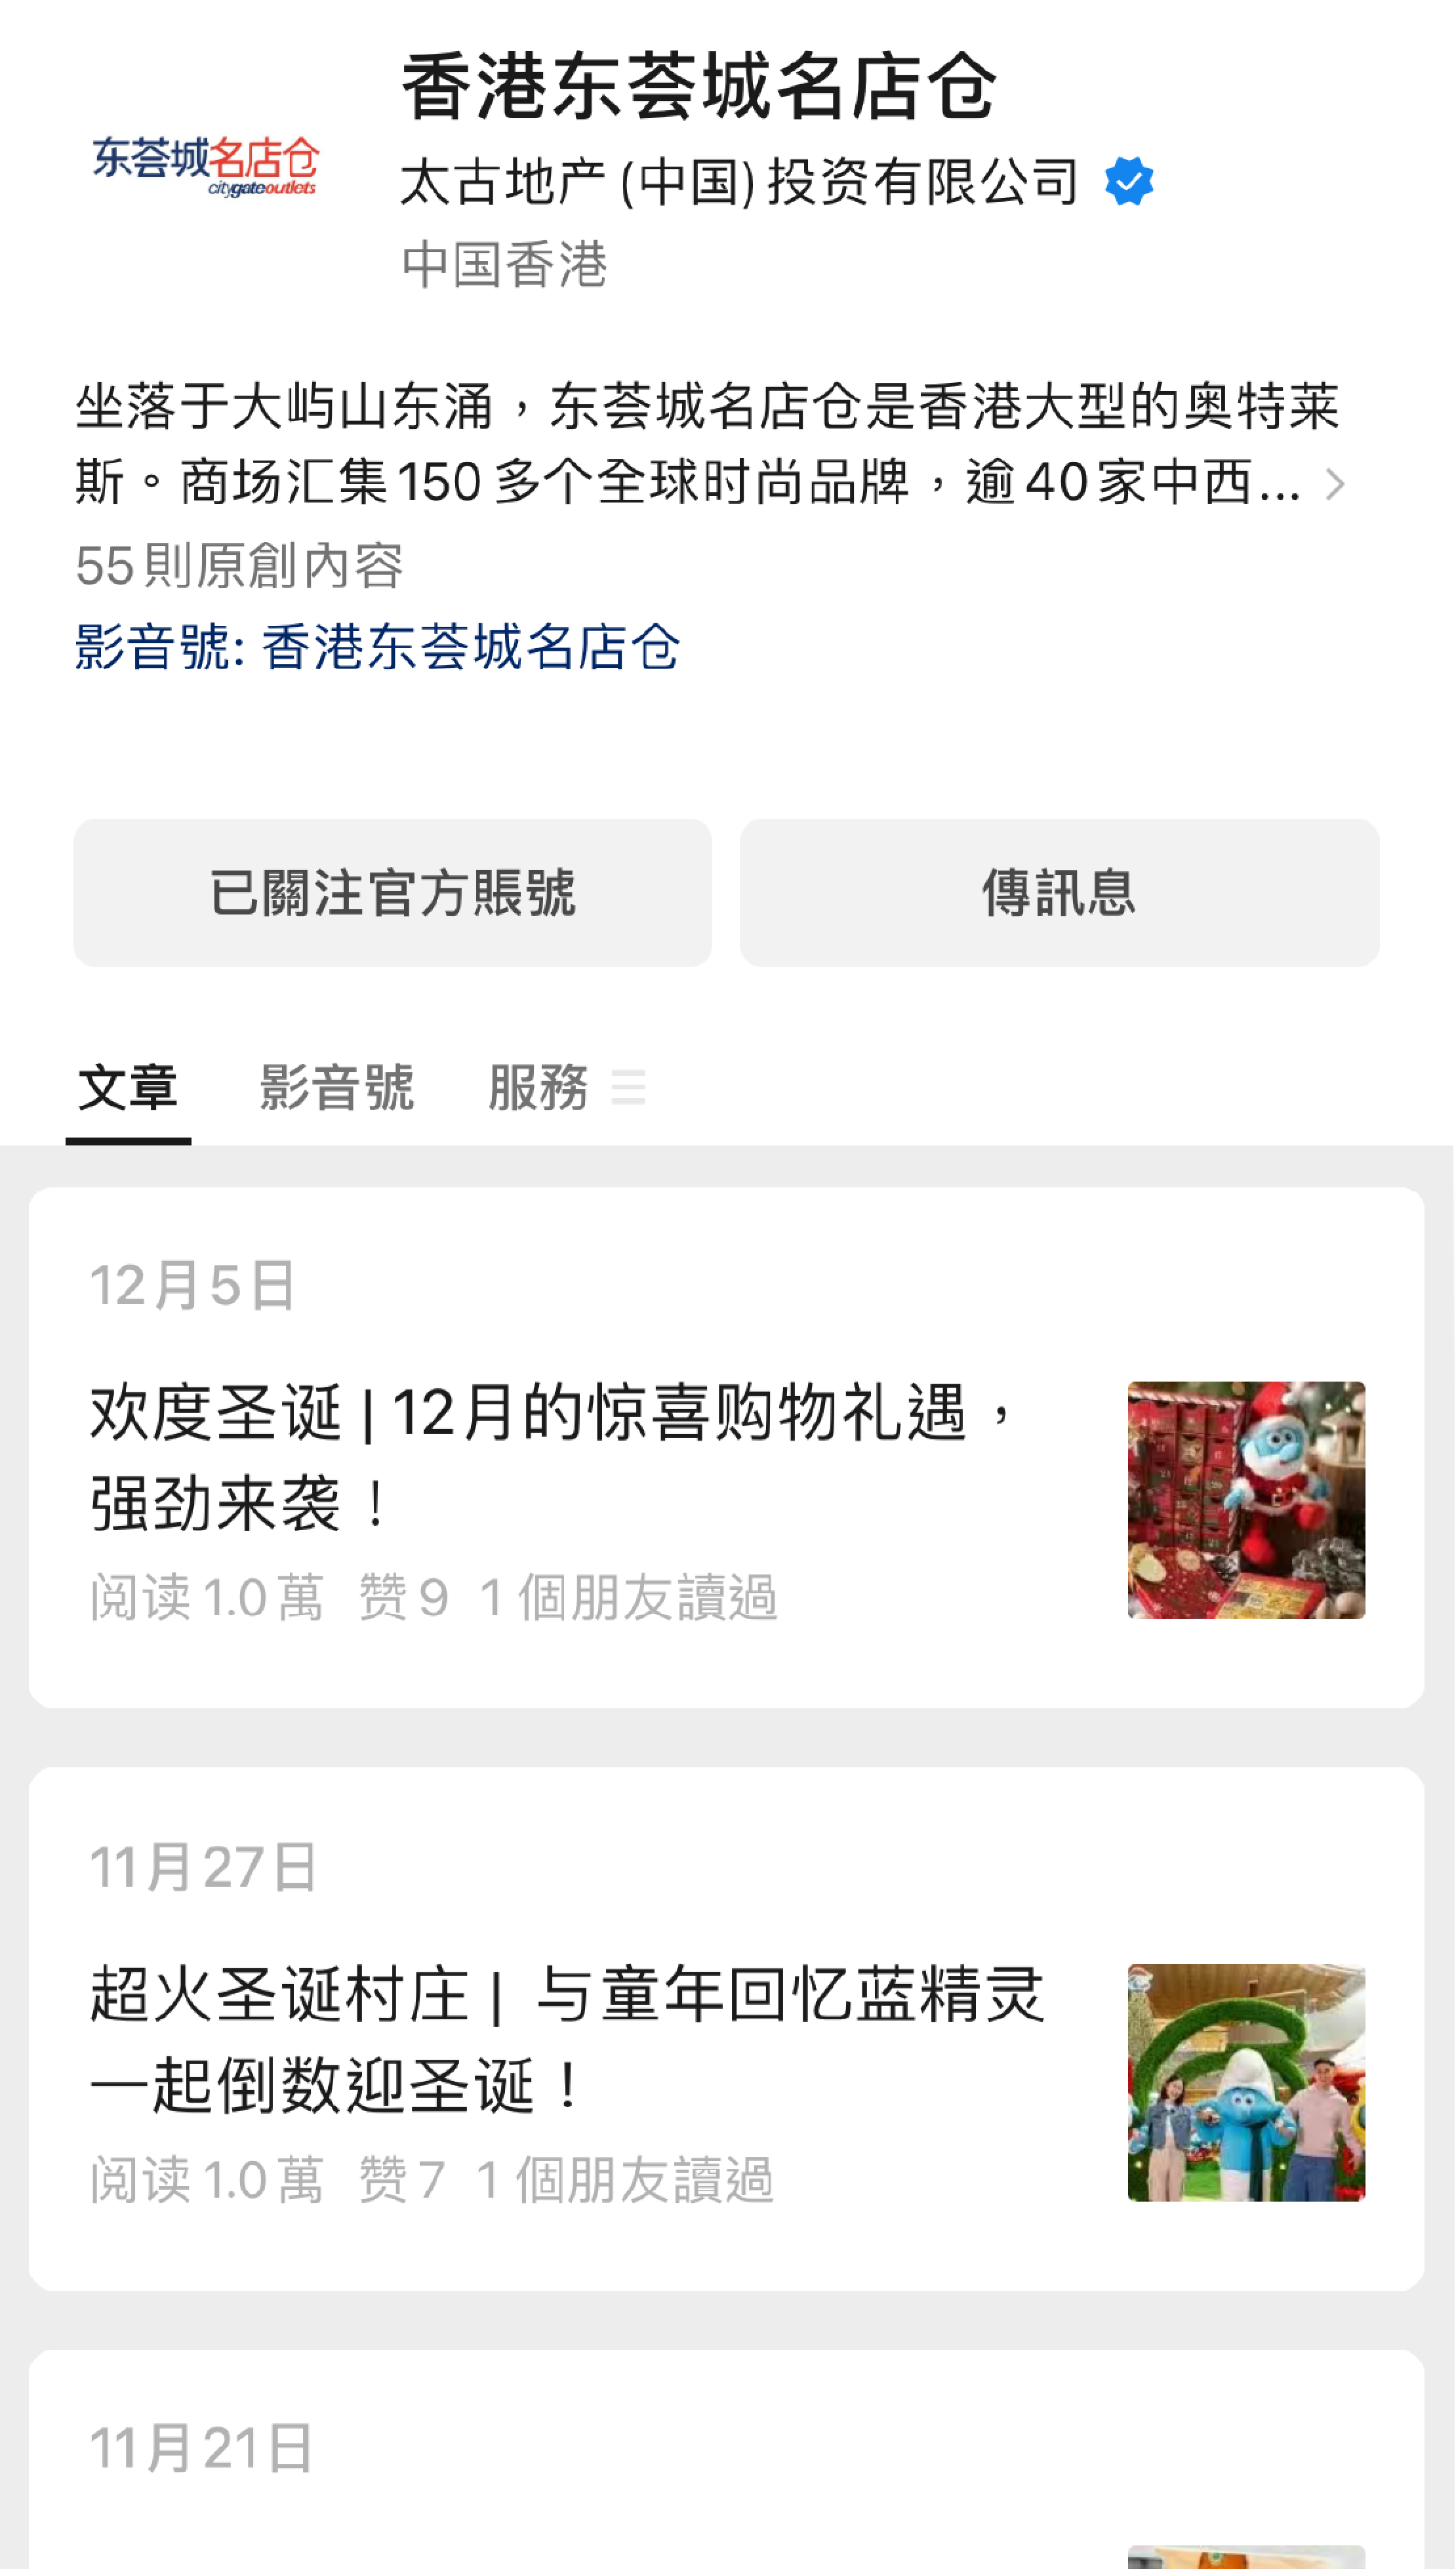 China-Marketing-INITSOC-Citygate Outlets-WeChat